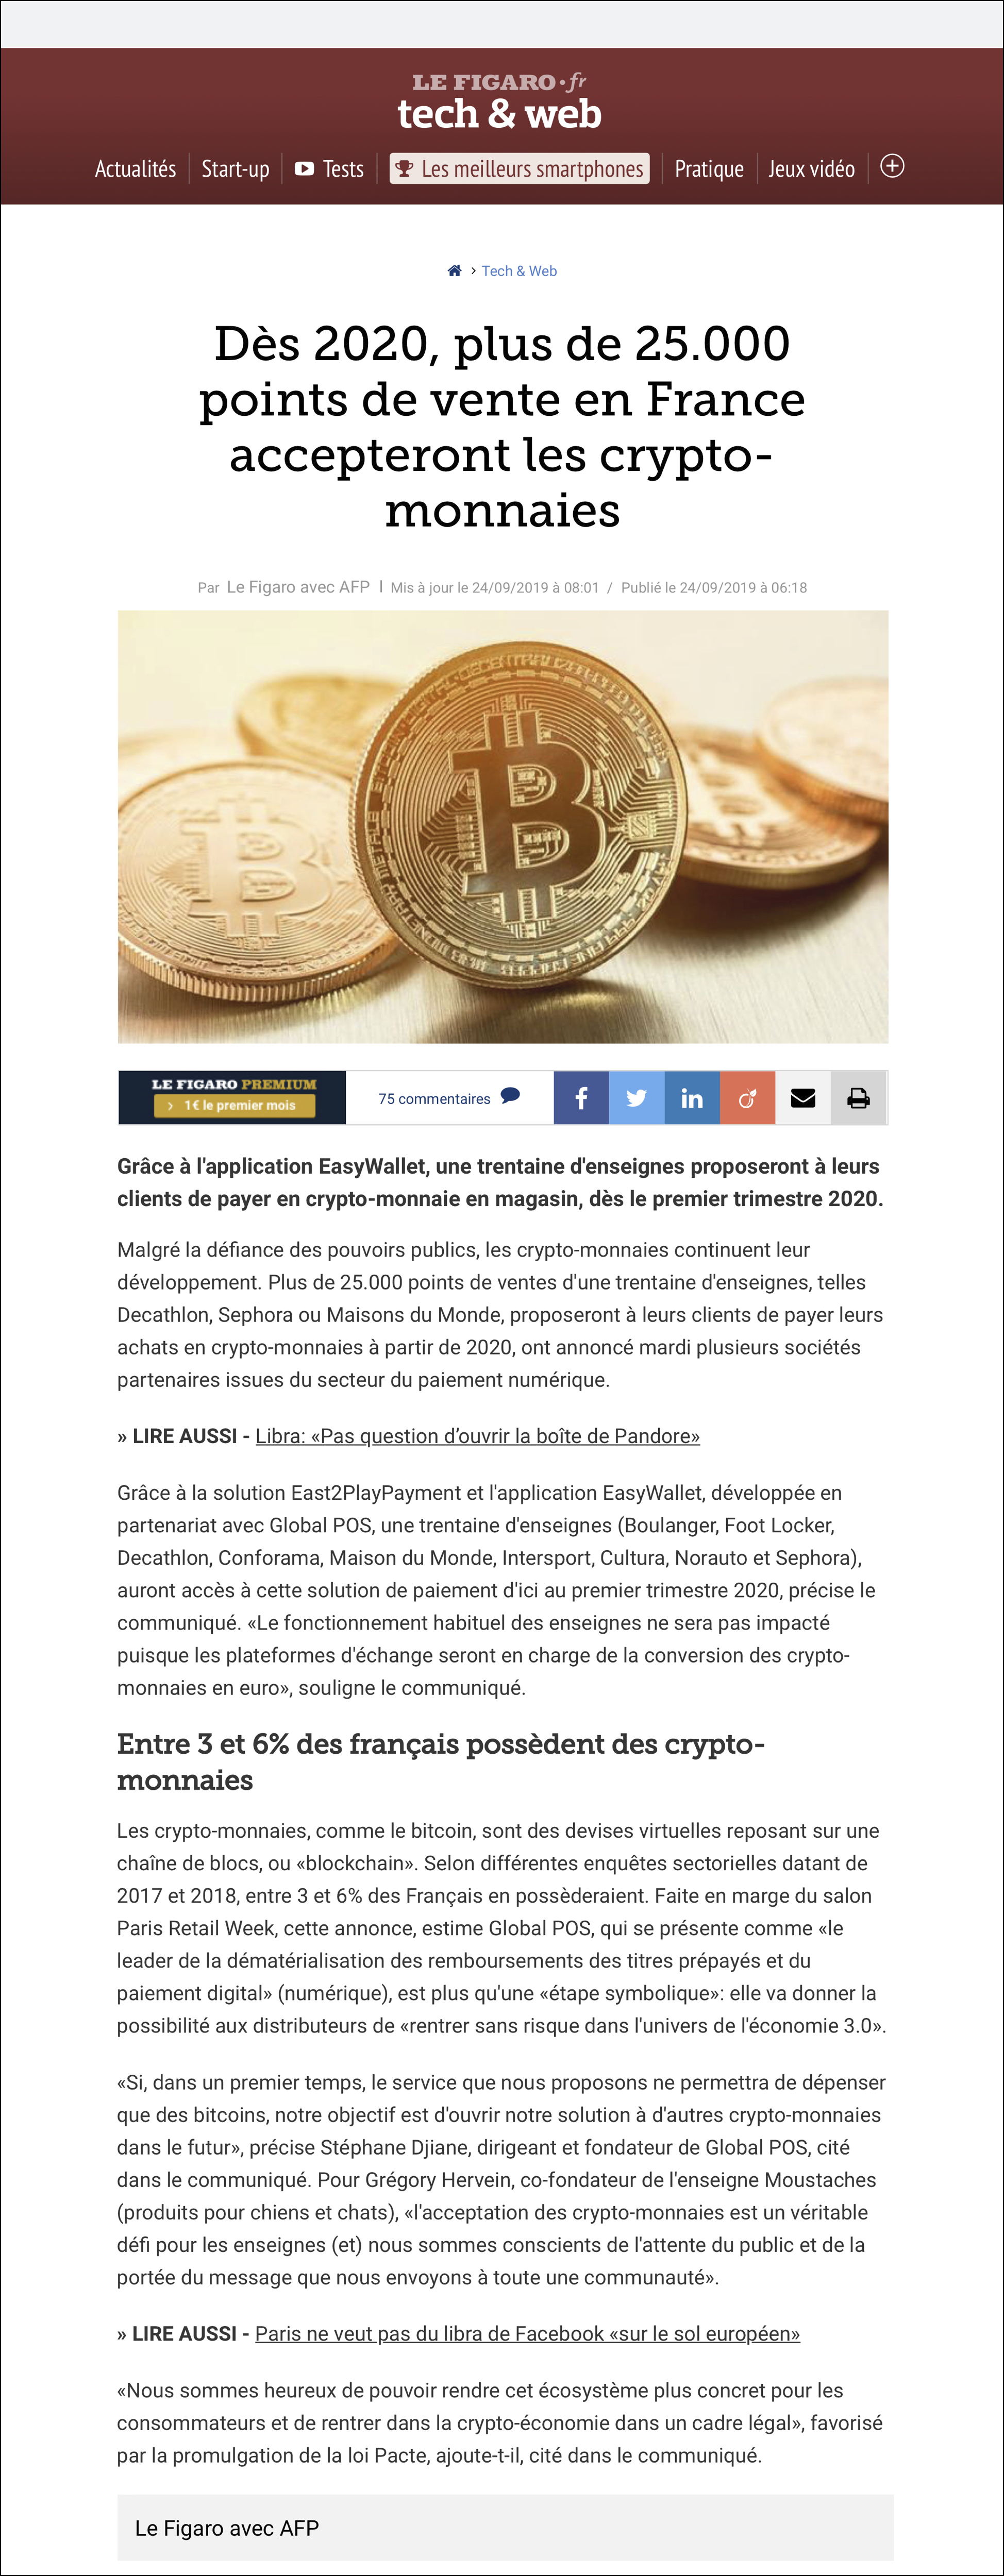 Dès 2020, plus de 25.000 points de vente en France accepteront les crypto-monnaies.jpg